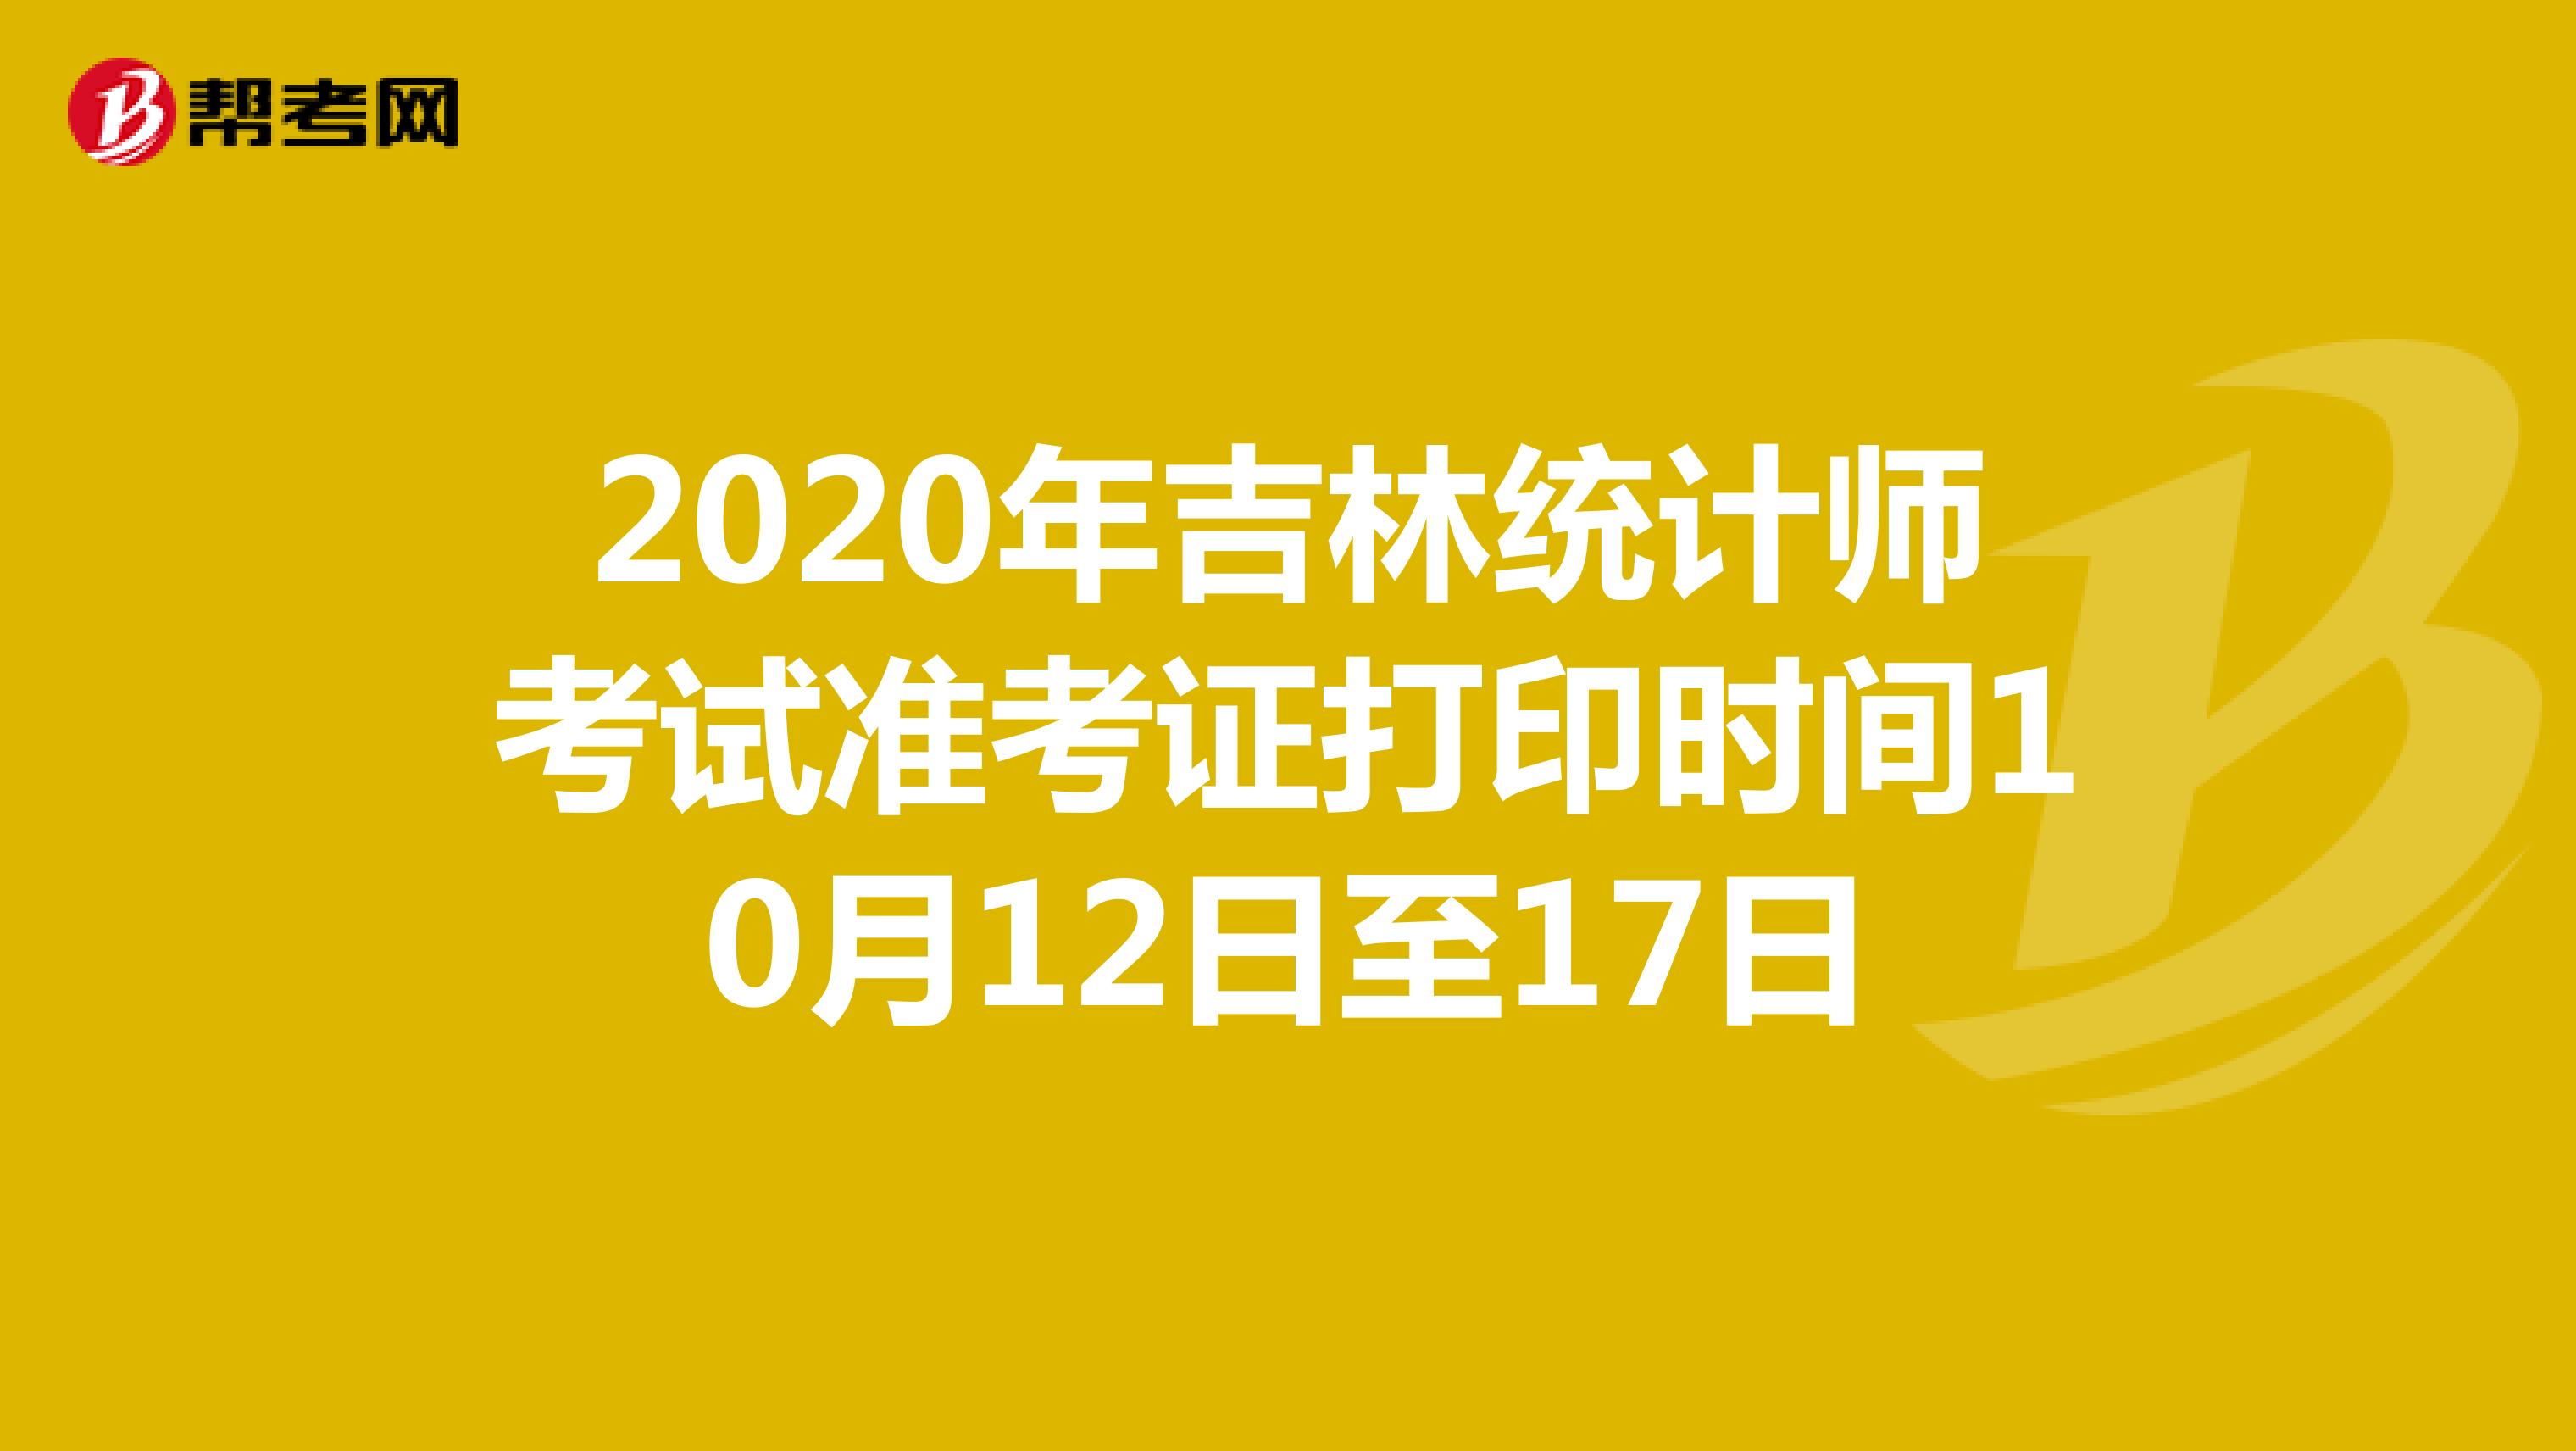 2020年吉林统计师考试准考证打印时间10月12日至17日